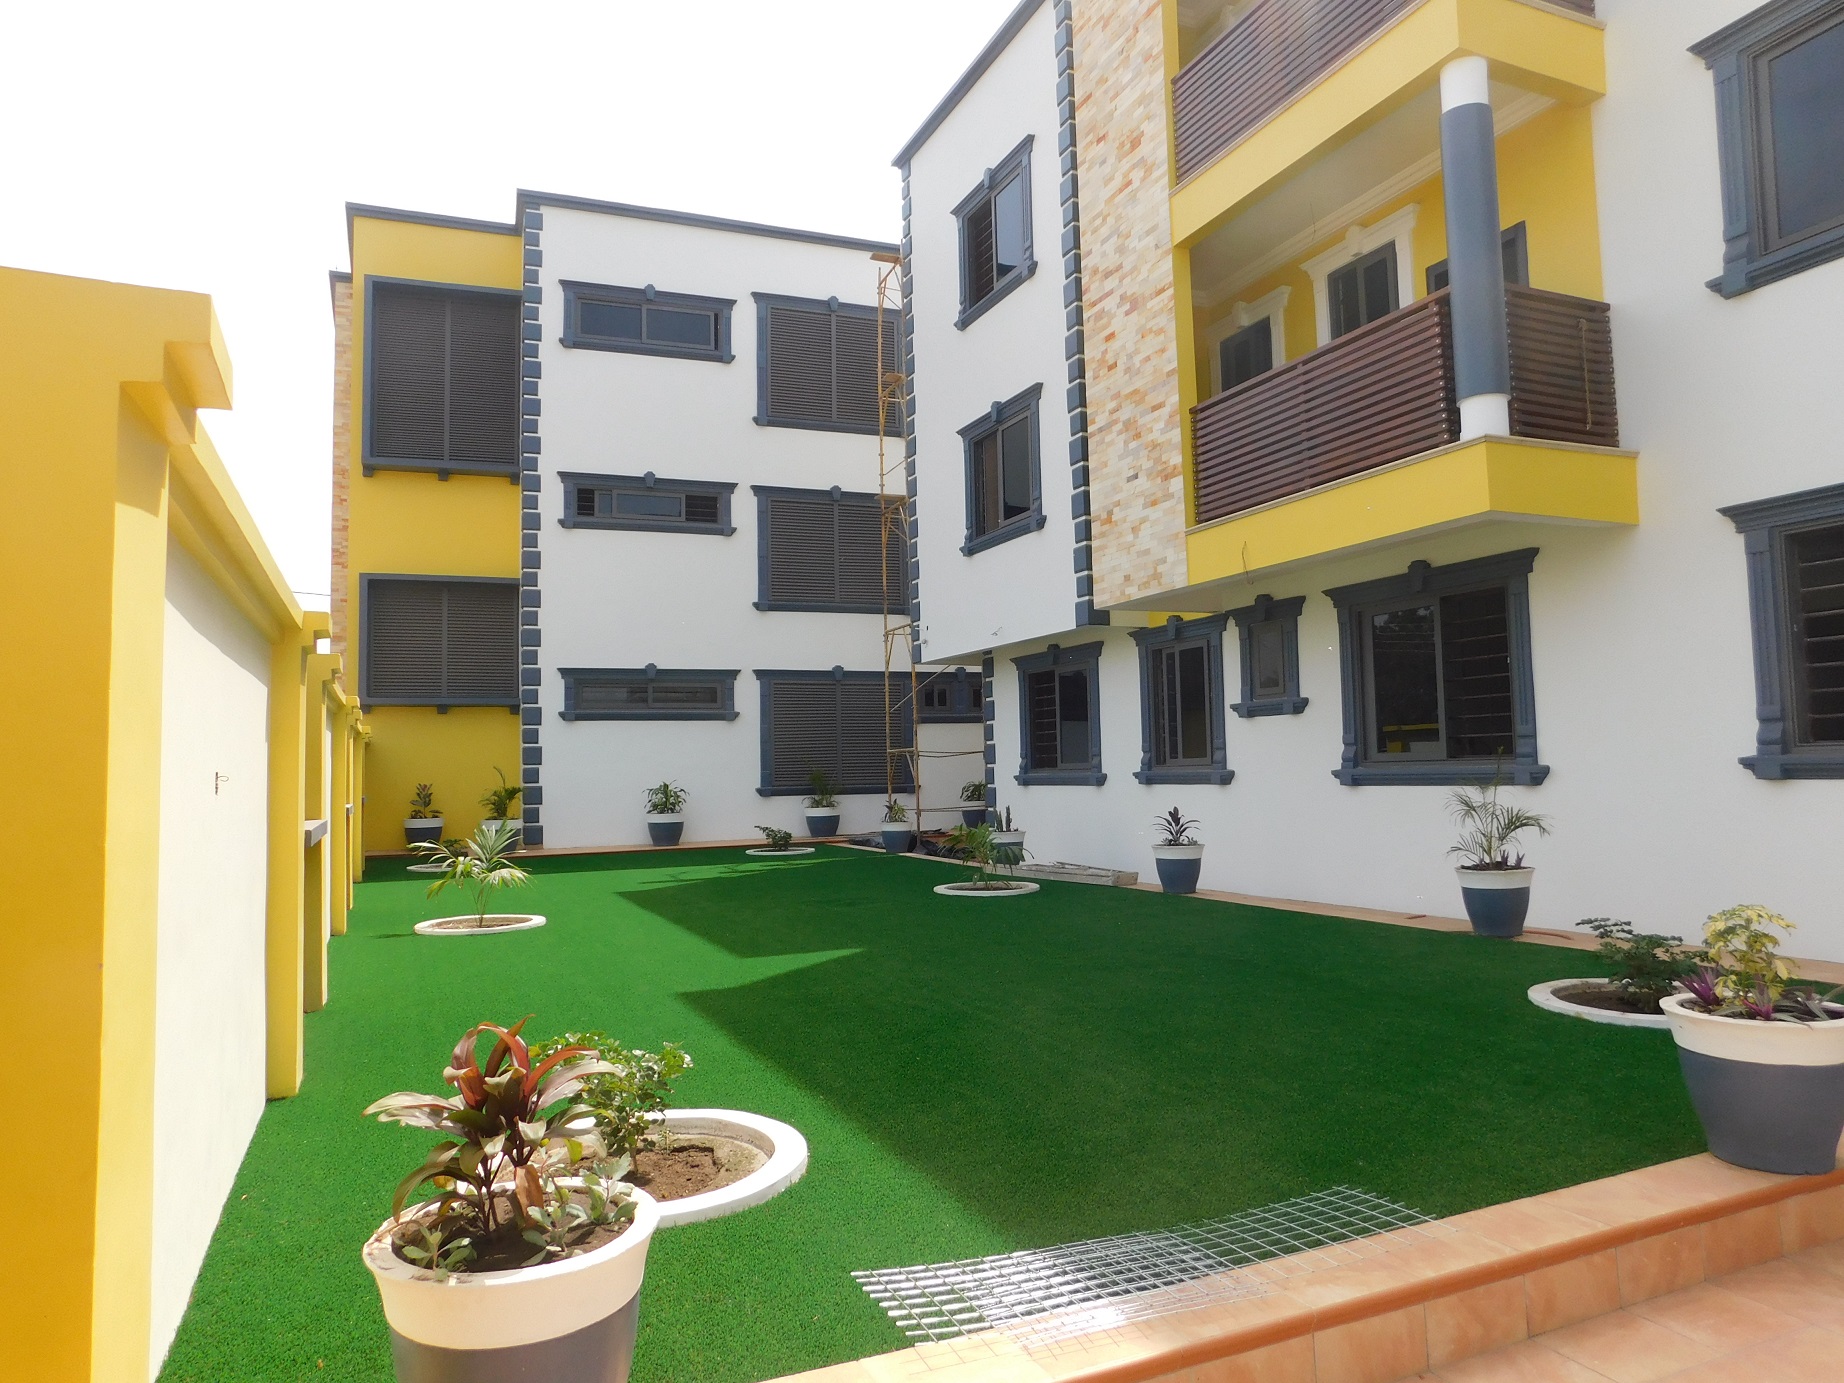 3 Bedroom Apartment for Rent – Adenta | SellRent Ghana